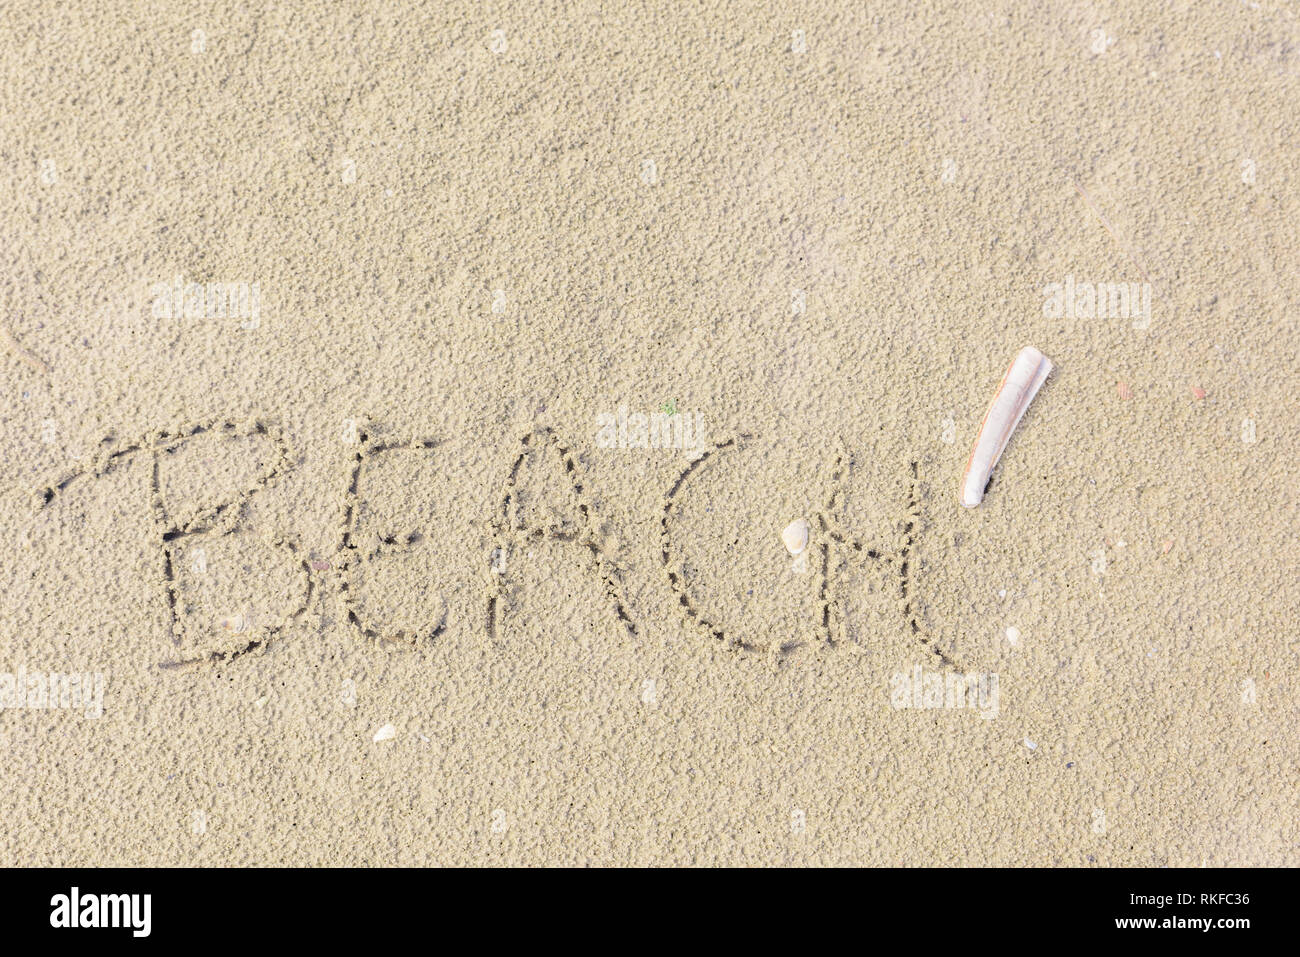 La palabra 'Playa' está escrito en la arena como un concepto de libertad, relajación y placer. Almeja navaja (Ensis ensis) se encuentra junto a la palabra en la arena Foto de stock